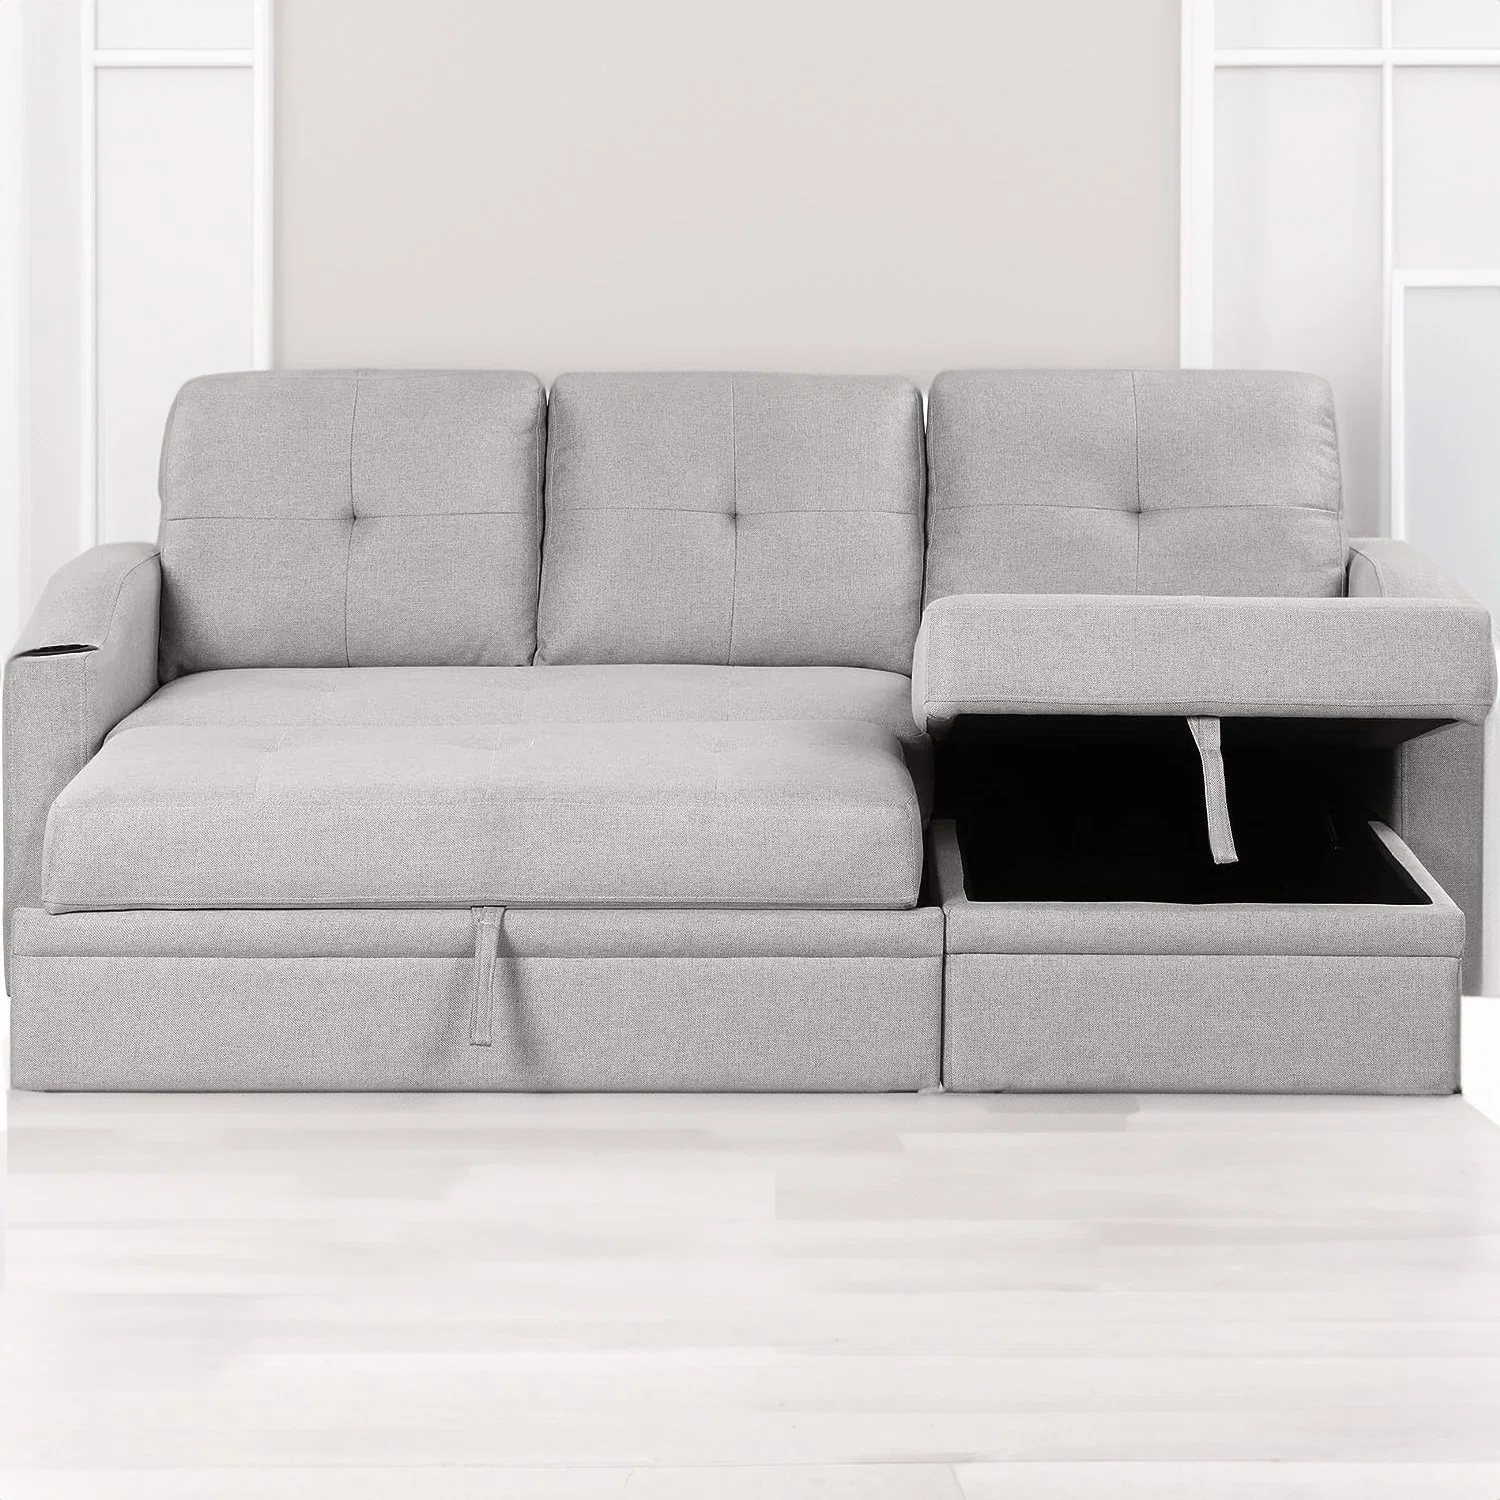 Fabricação Huayang personalizado sala de estar mobiliário mobiliário funcional moderno Folding Cama Sofá-cama de solteiro